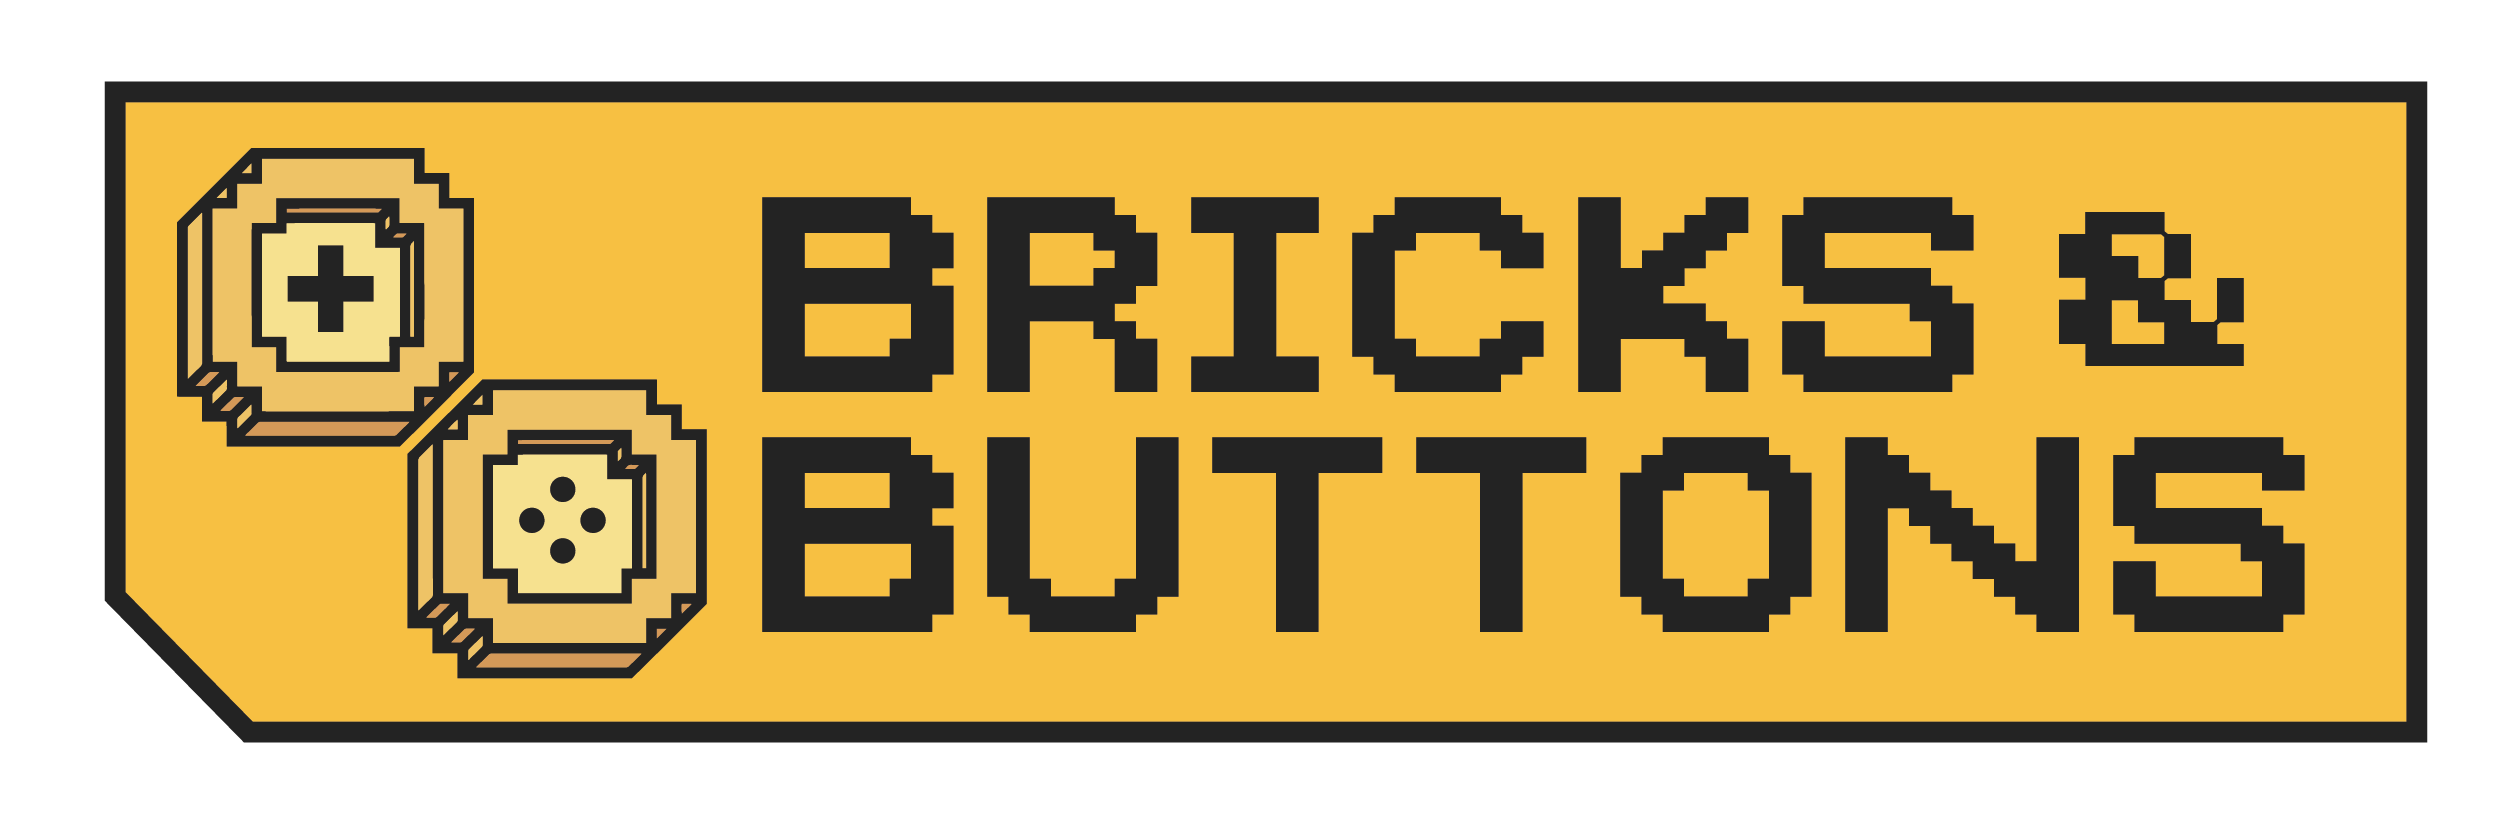 Bricks & Buttons